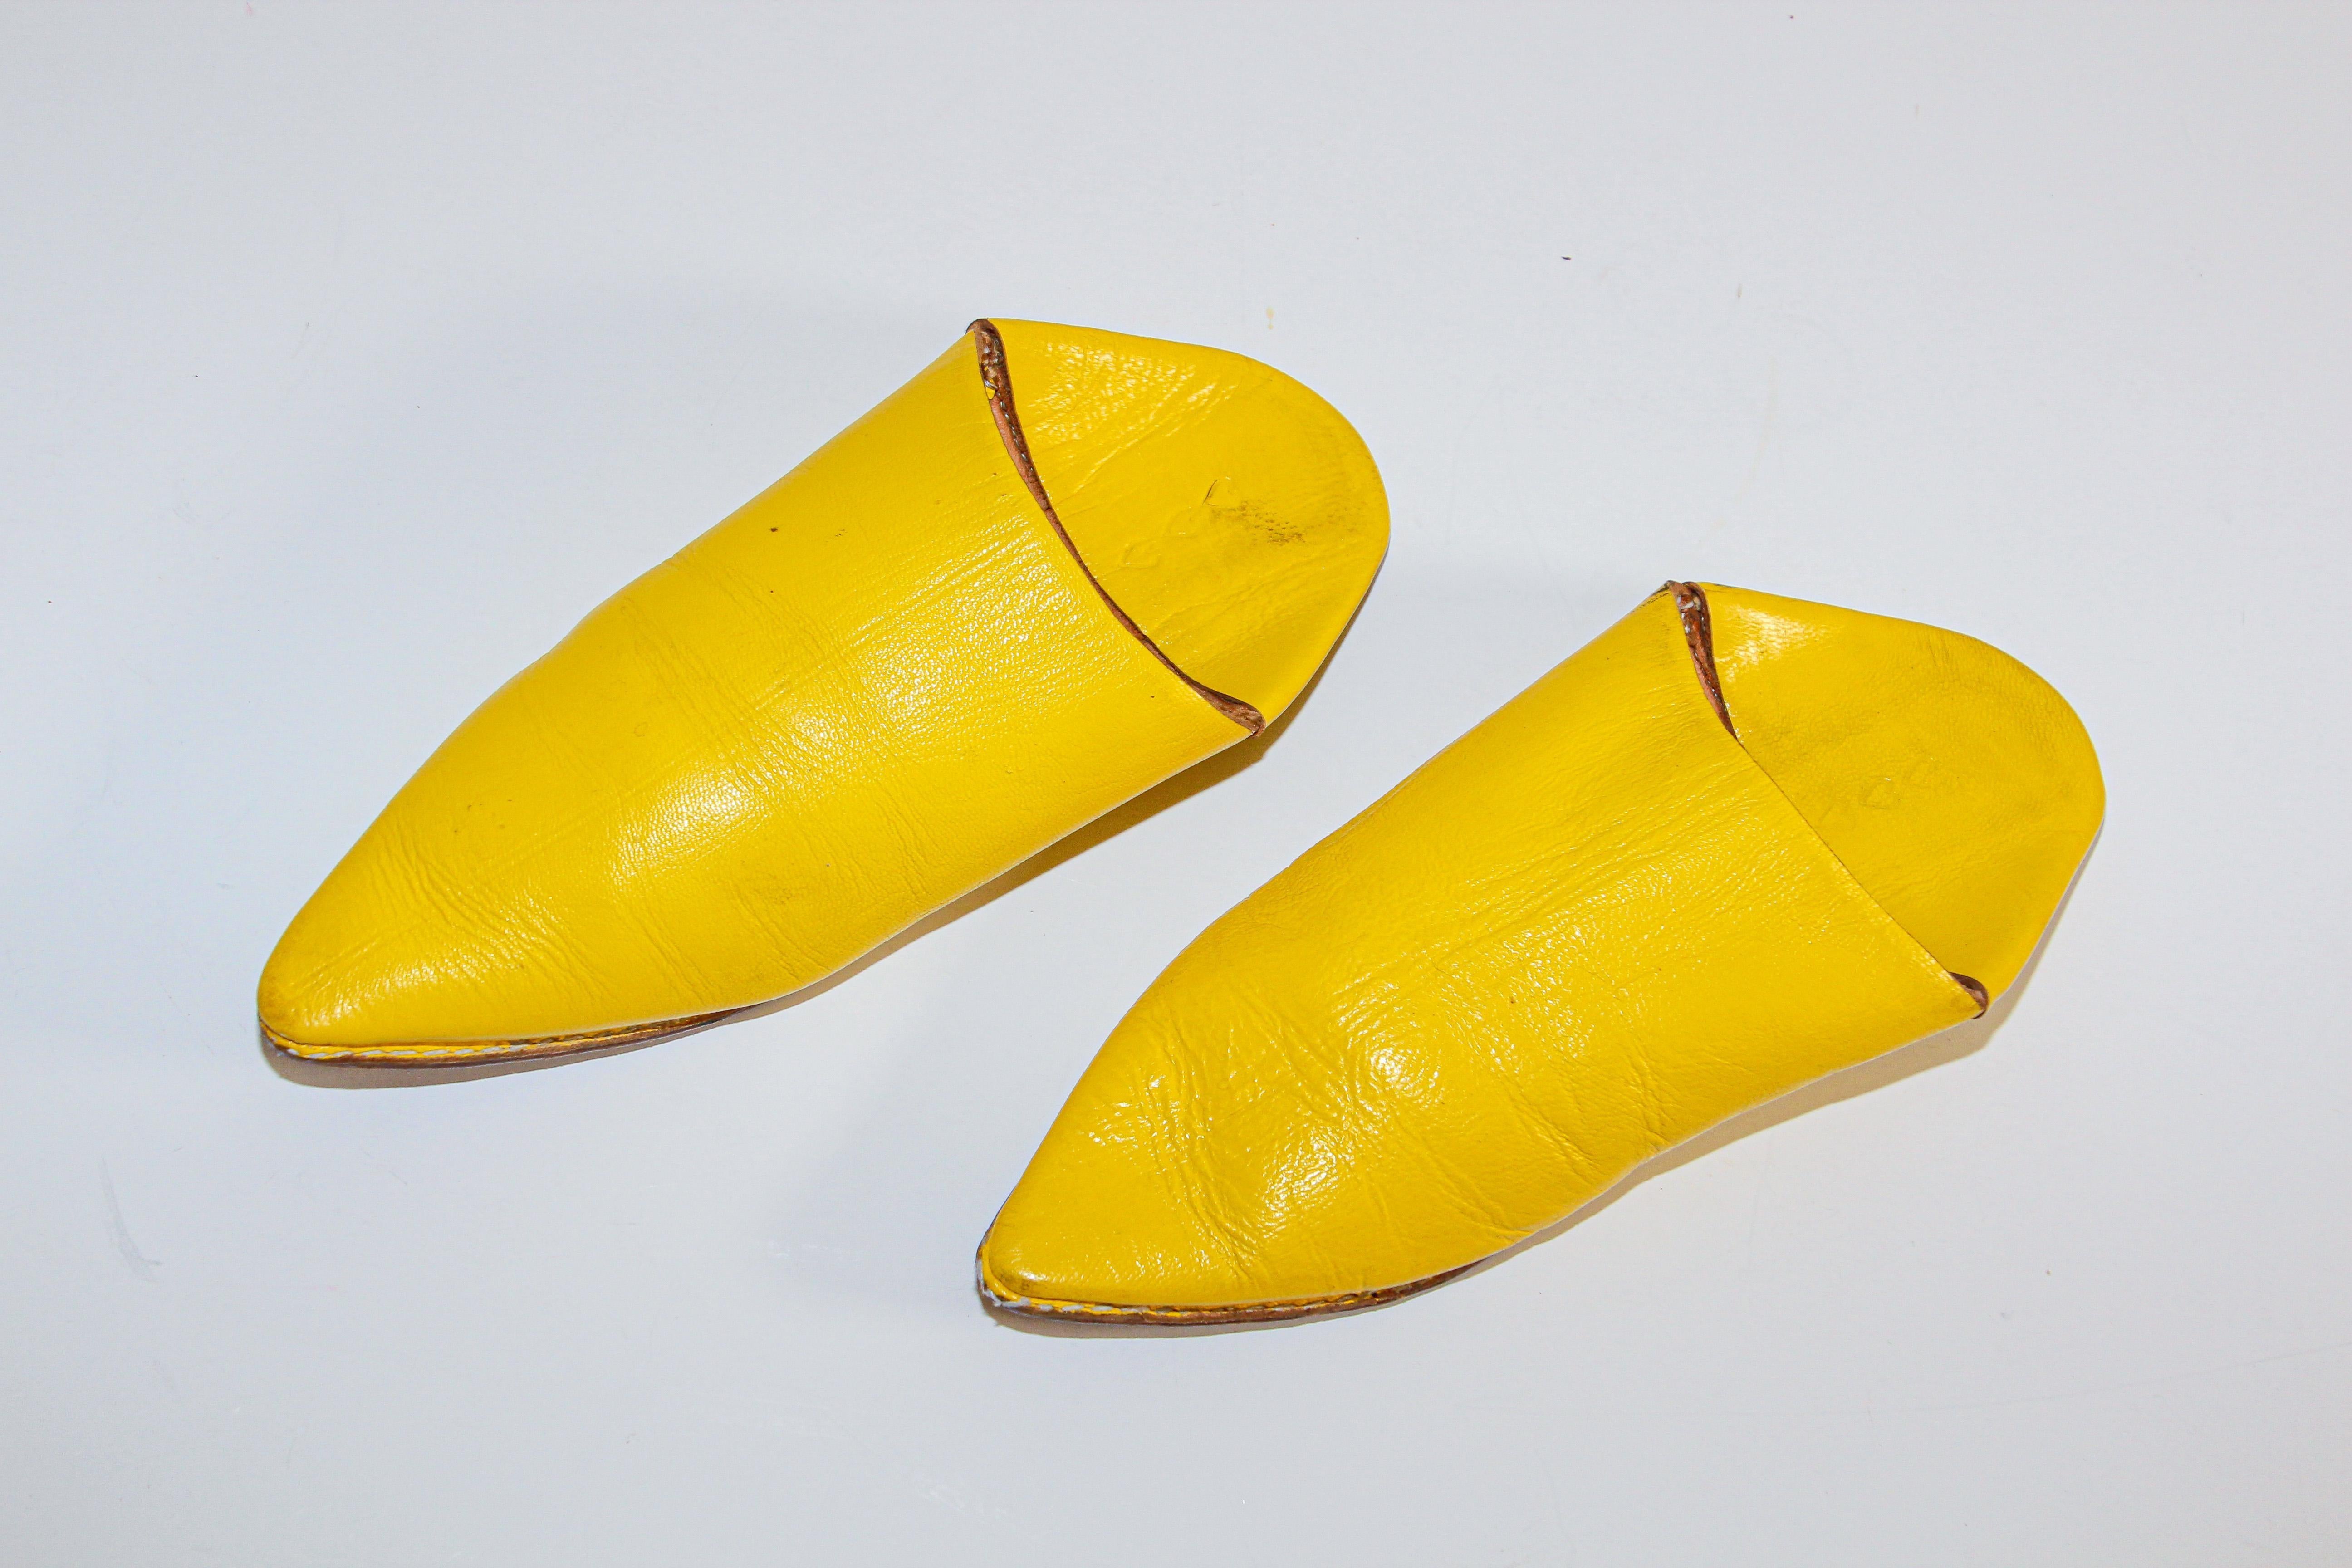 Marokkanische gelbe Lederslipschuhe sind perfekt handgefertigt, die Innenseite des Sockels ist aus weichem Leder gefertigt.
Handgenähter Sockel, handgefertigt in Fez, Marokko. 
Sie werden die marokkanischen Babouches nicht von den Füßen